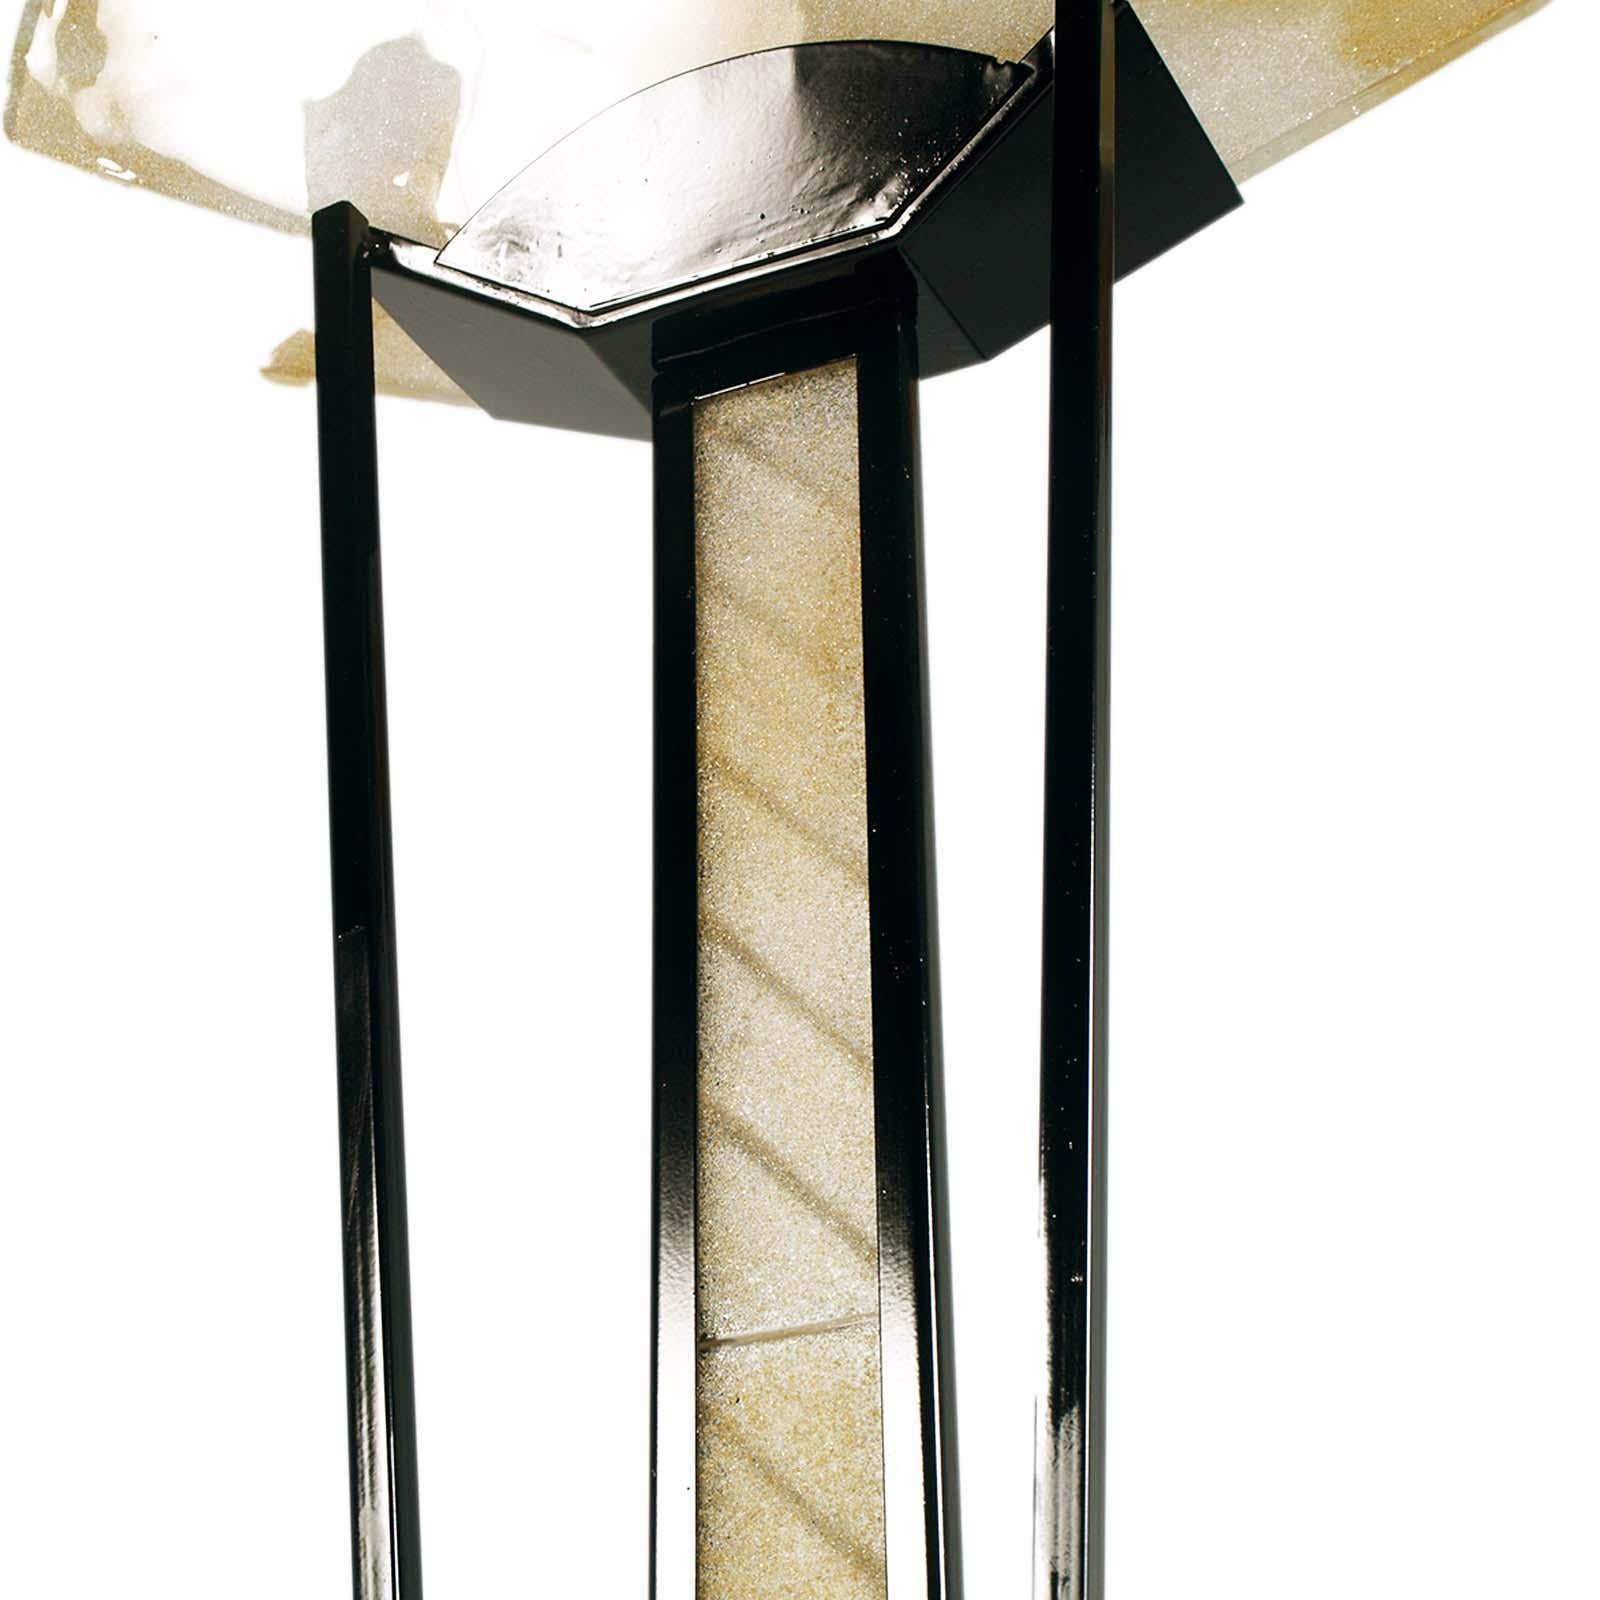 Schöne Stehlampe aus den 70er Jahren, im Art Decò-Stil, von Av Mazzega, funktionierend; Struktur aus lackiertem Stahl und doppeltem Murano-Glas für den Lampenschirm mit voller Höhe Anwendung von Murano-Platten auf dem Stamm.